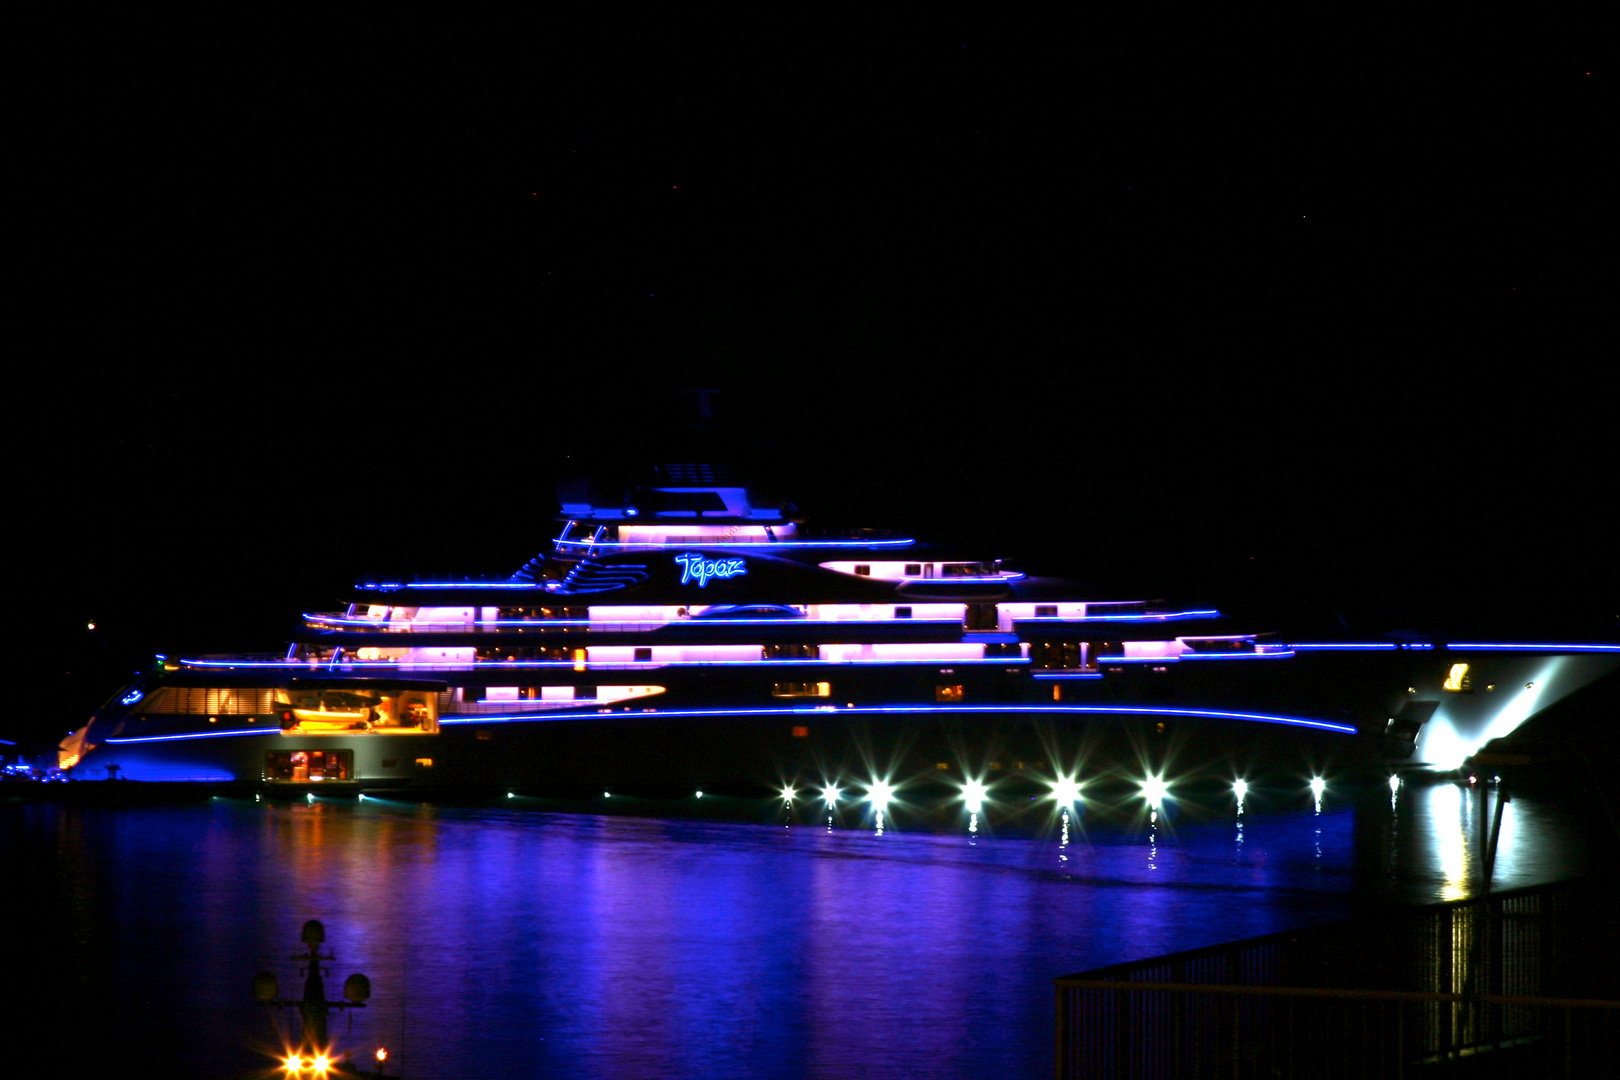 Luxury Yacht "Topaz" by night